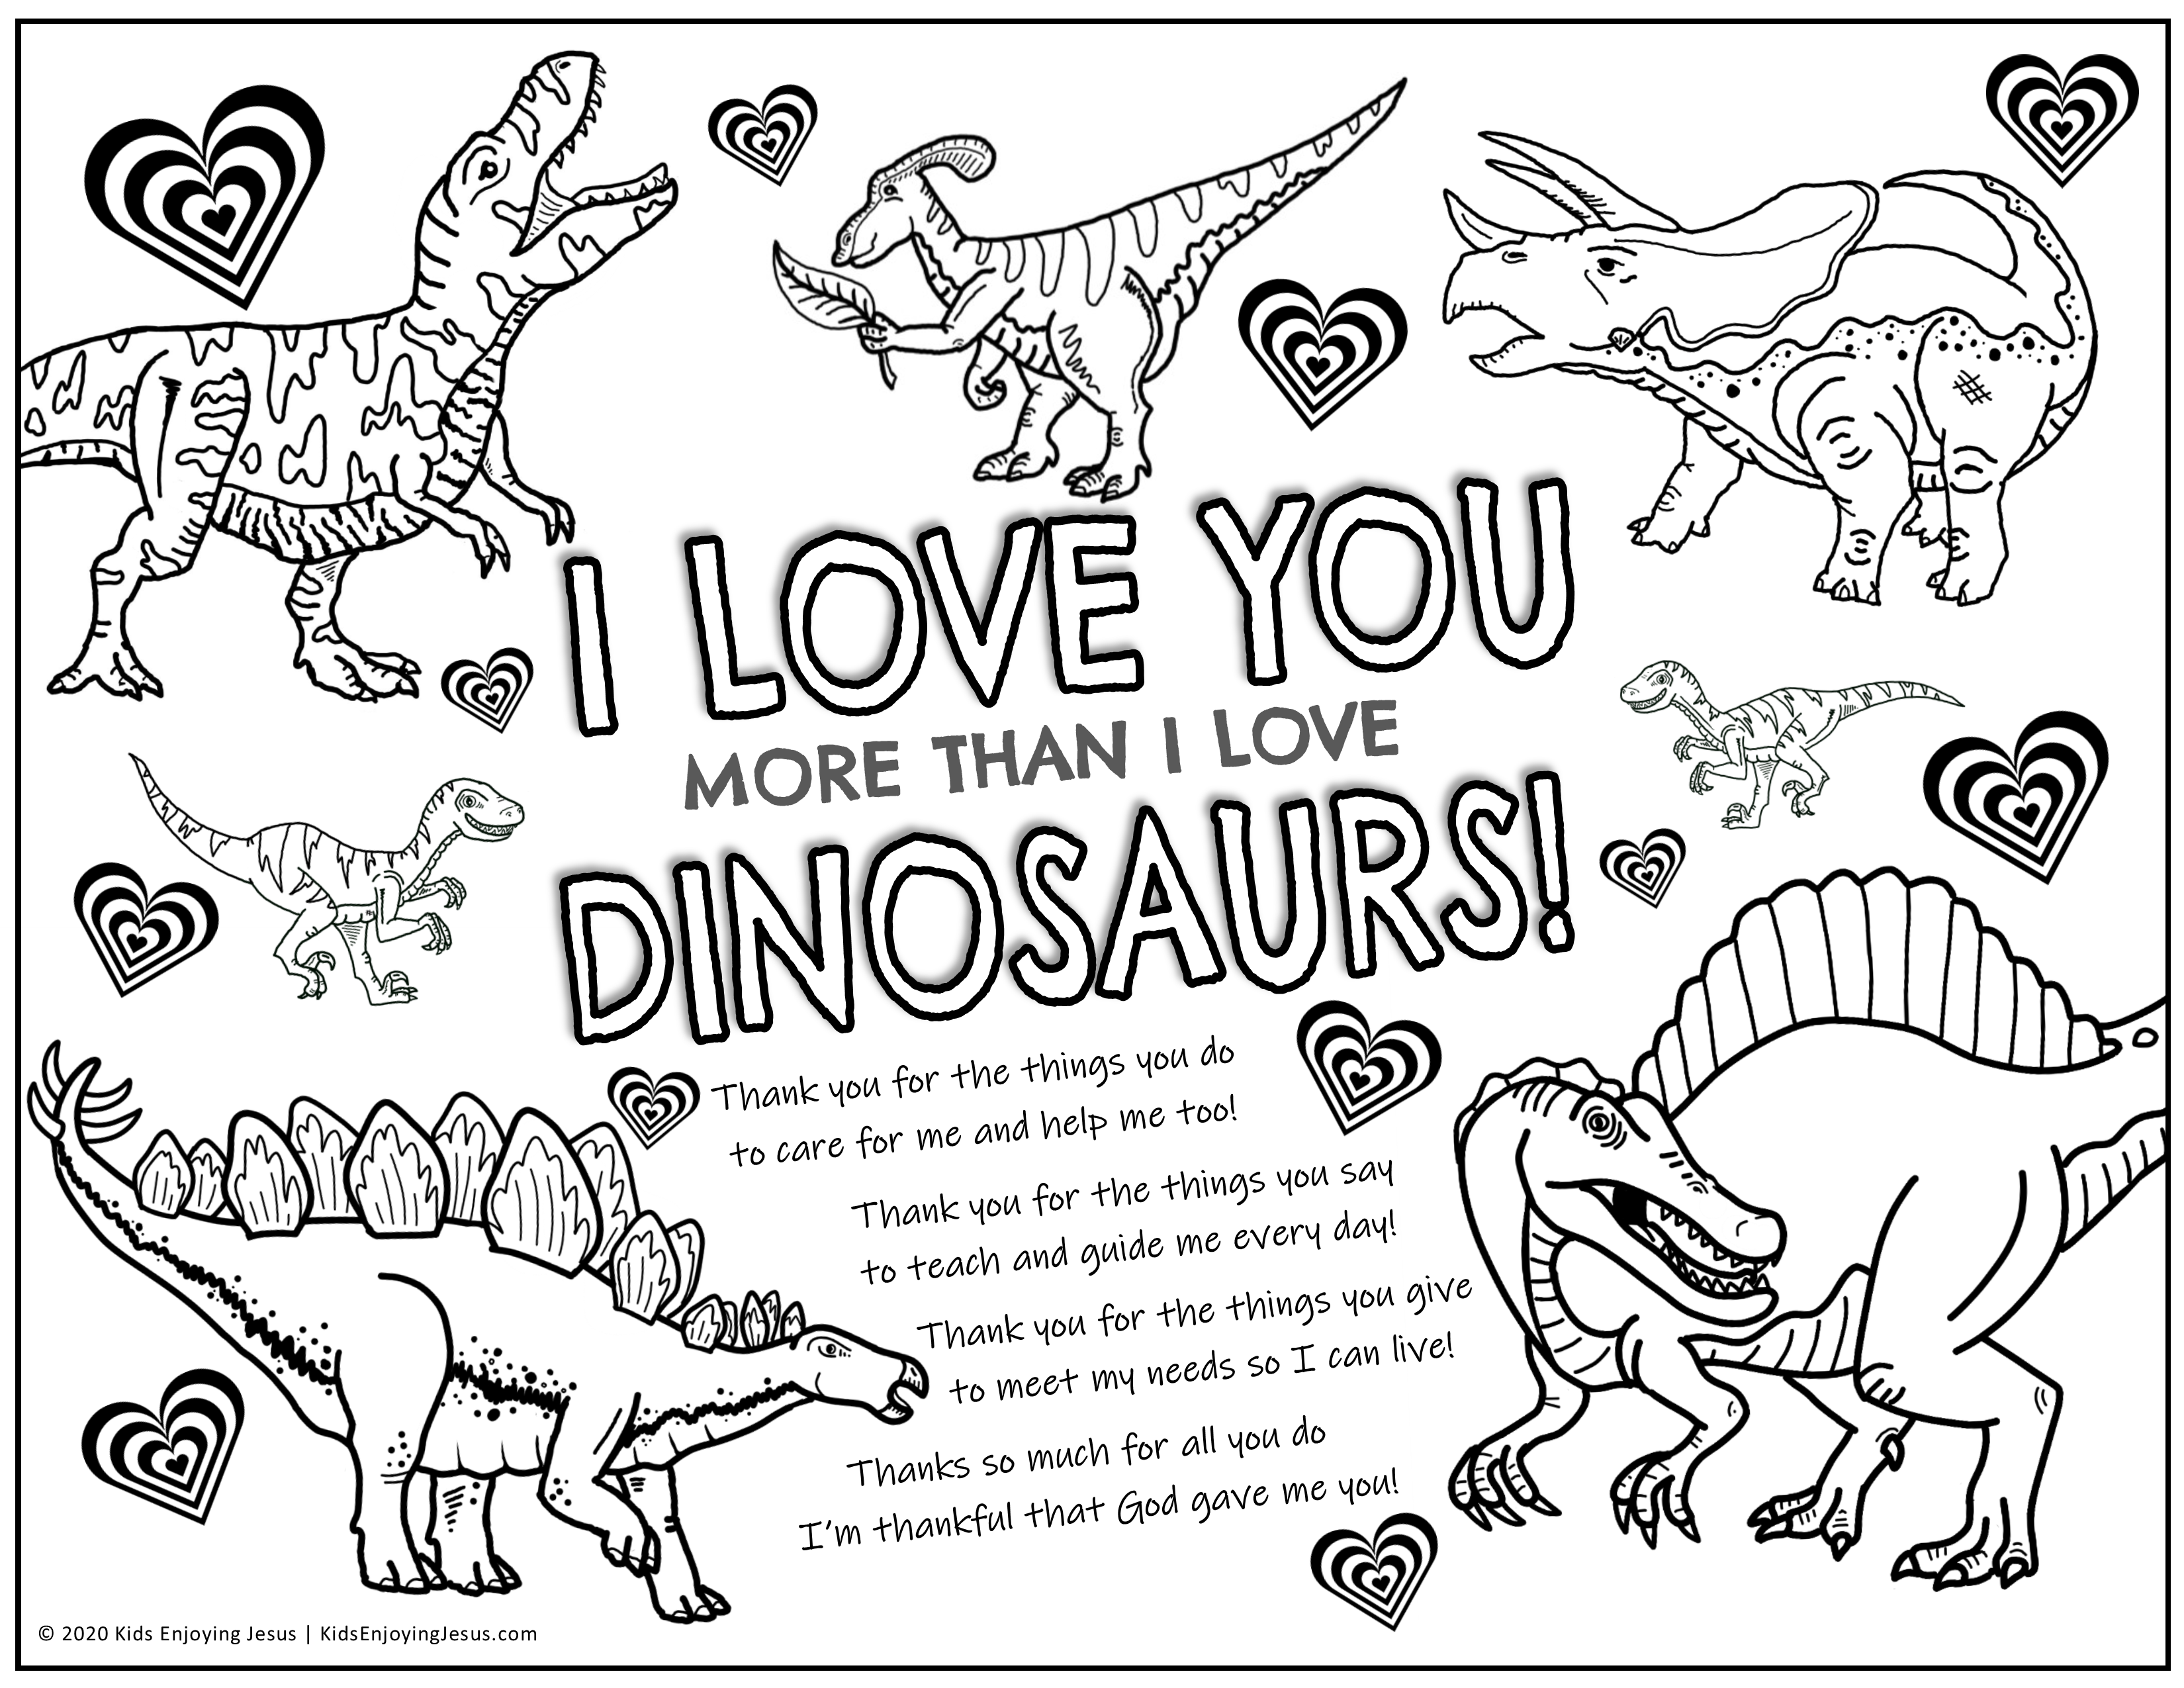 i-love-you-more-than-dinosaurs-craft-kids-enjoying-jesus